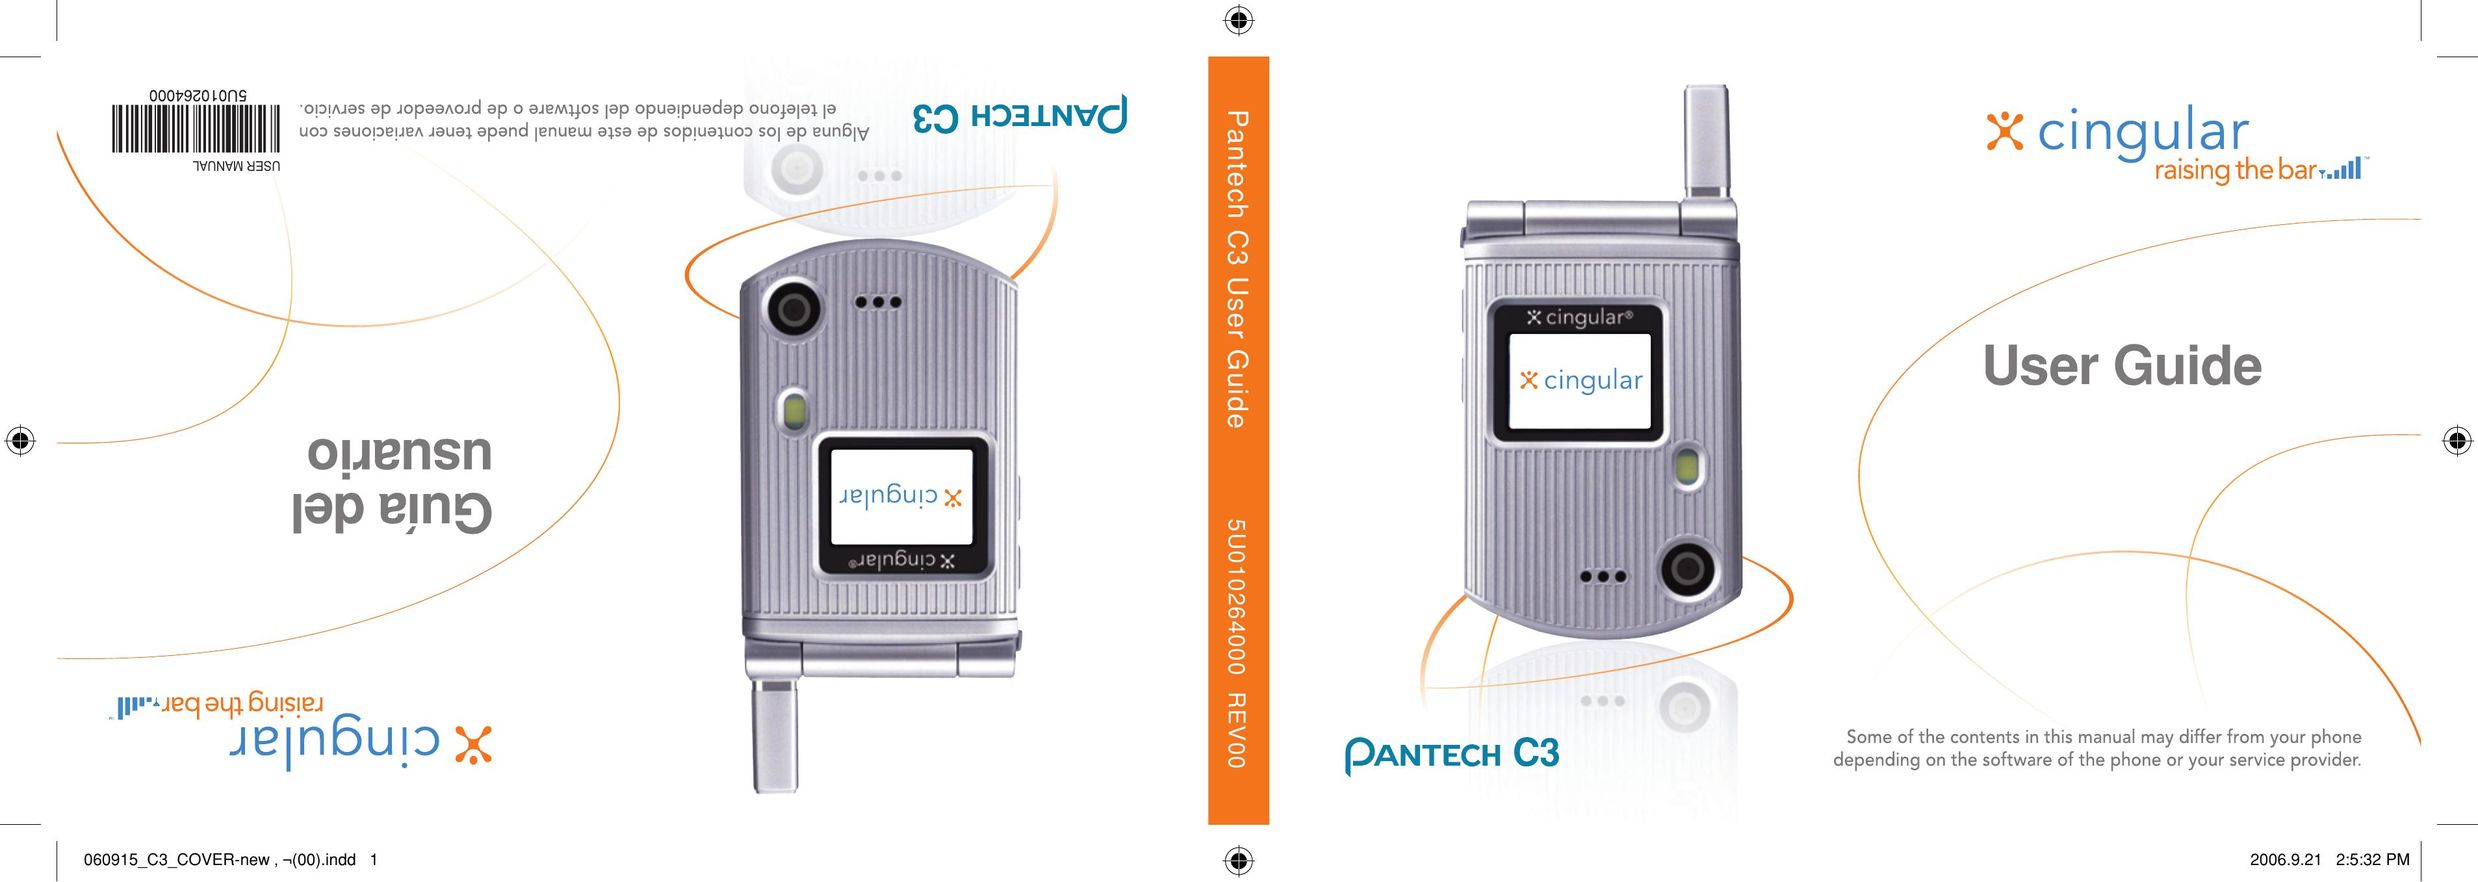 Pantech C3 Cell Phone User Manual